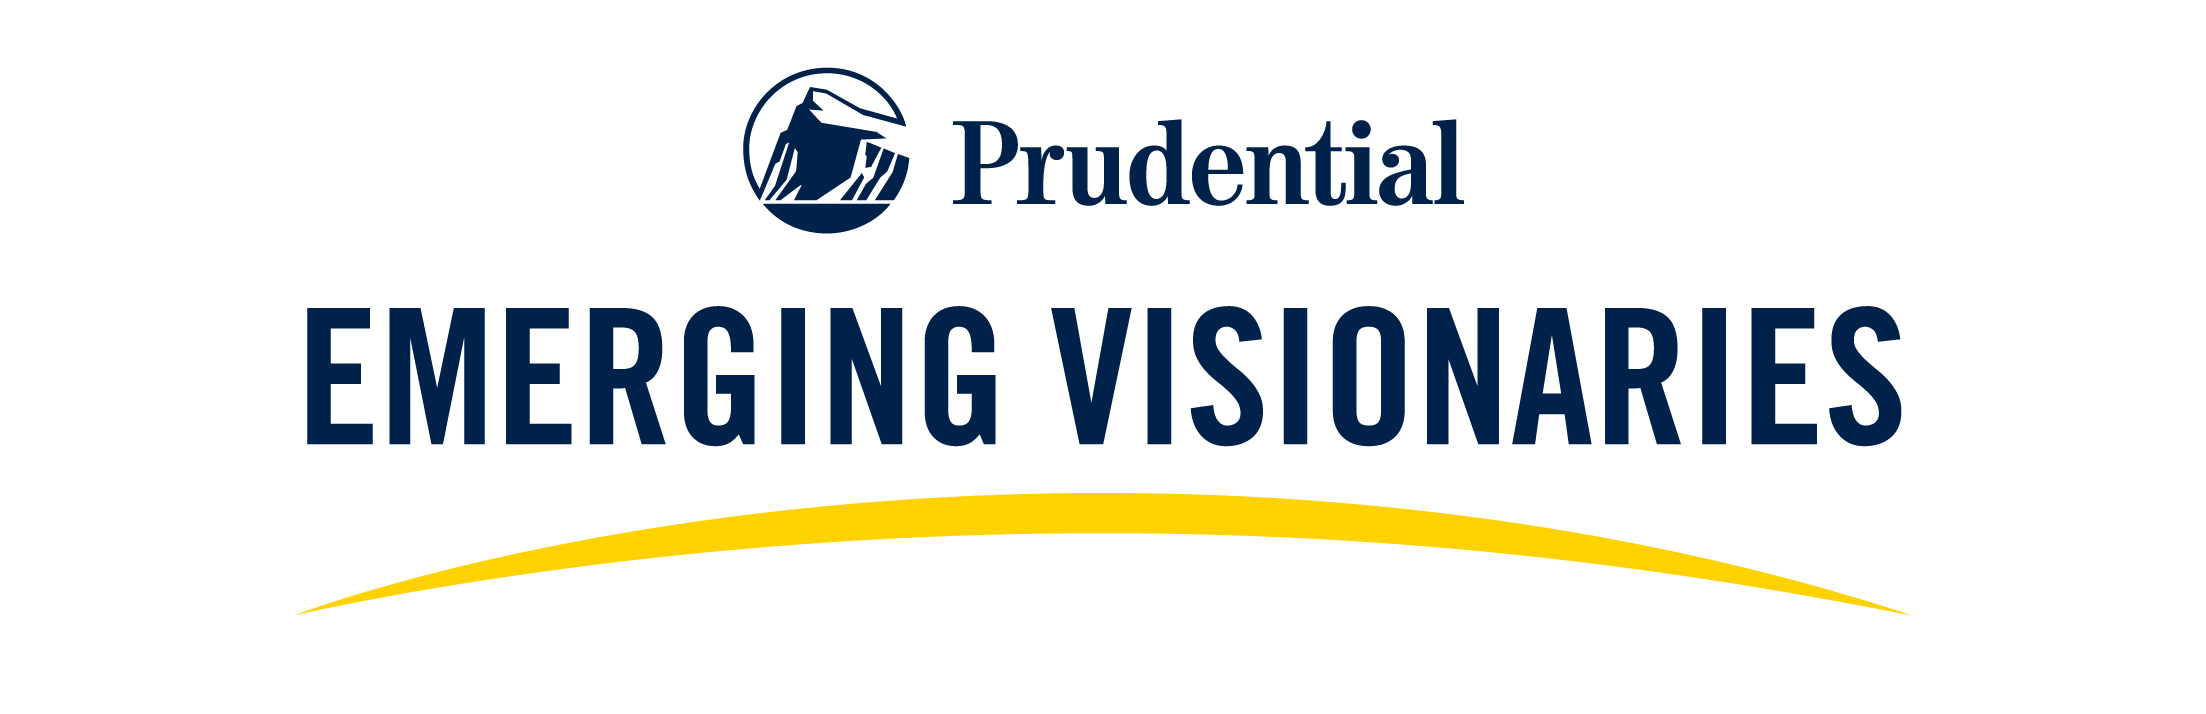 Prudential Emerging Visionaries Logo